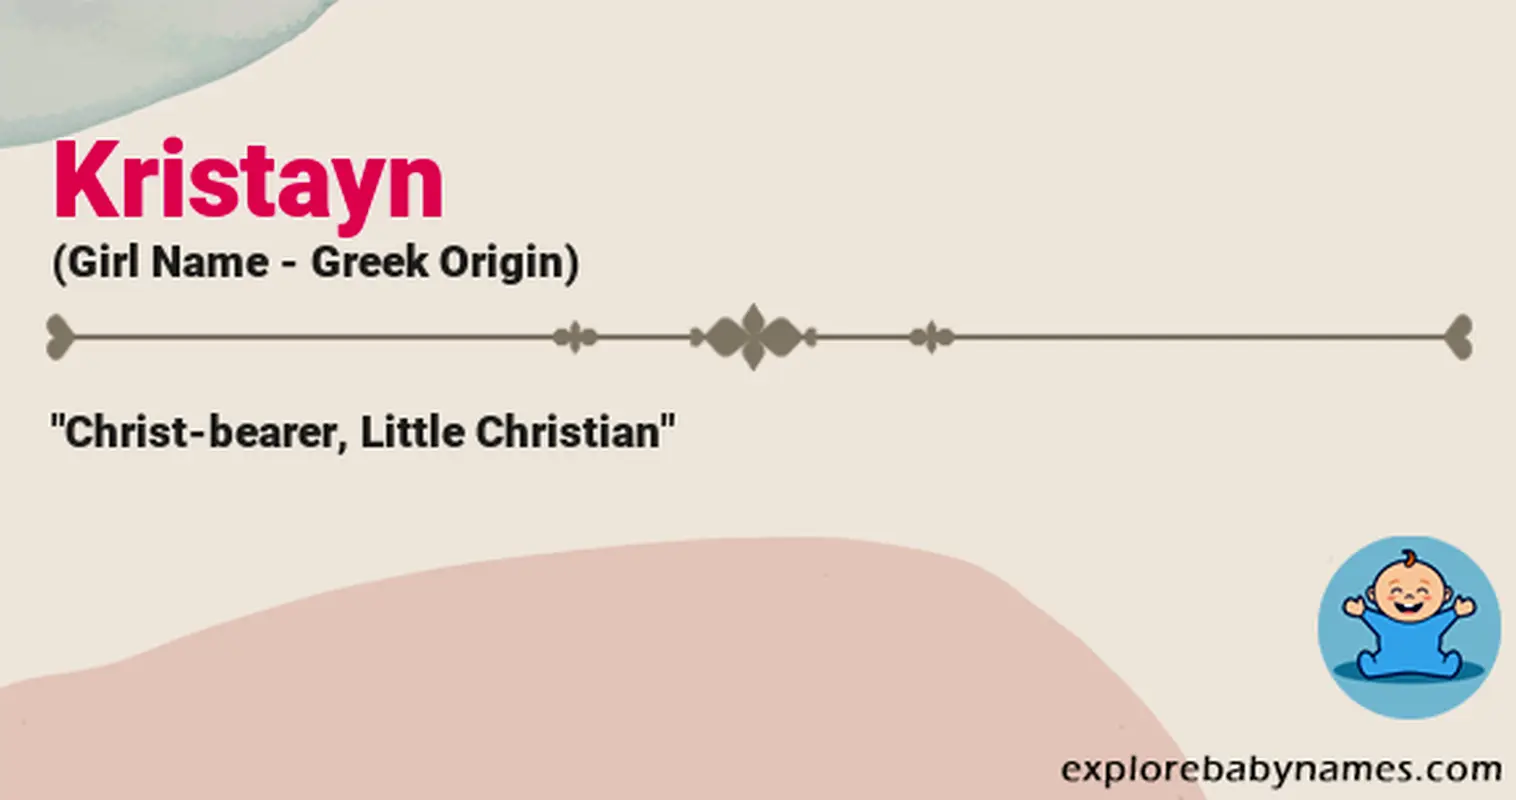 Meaning of Kristayn